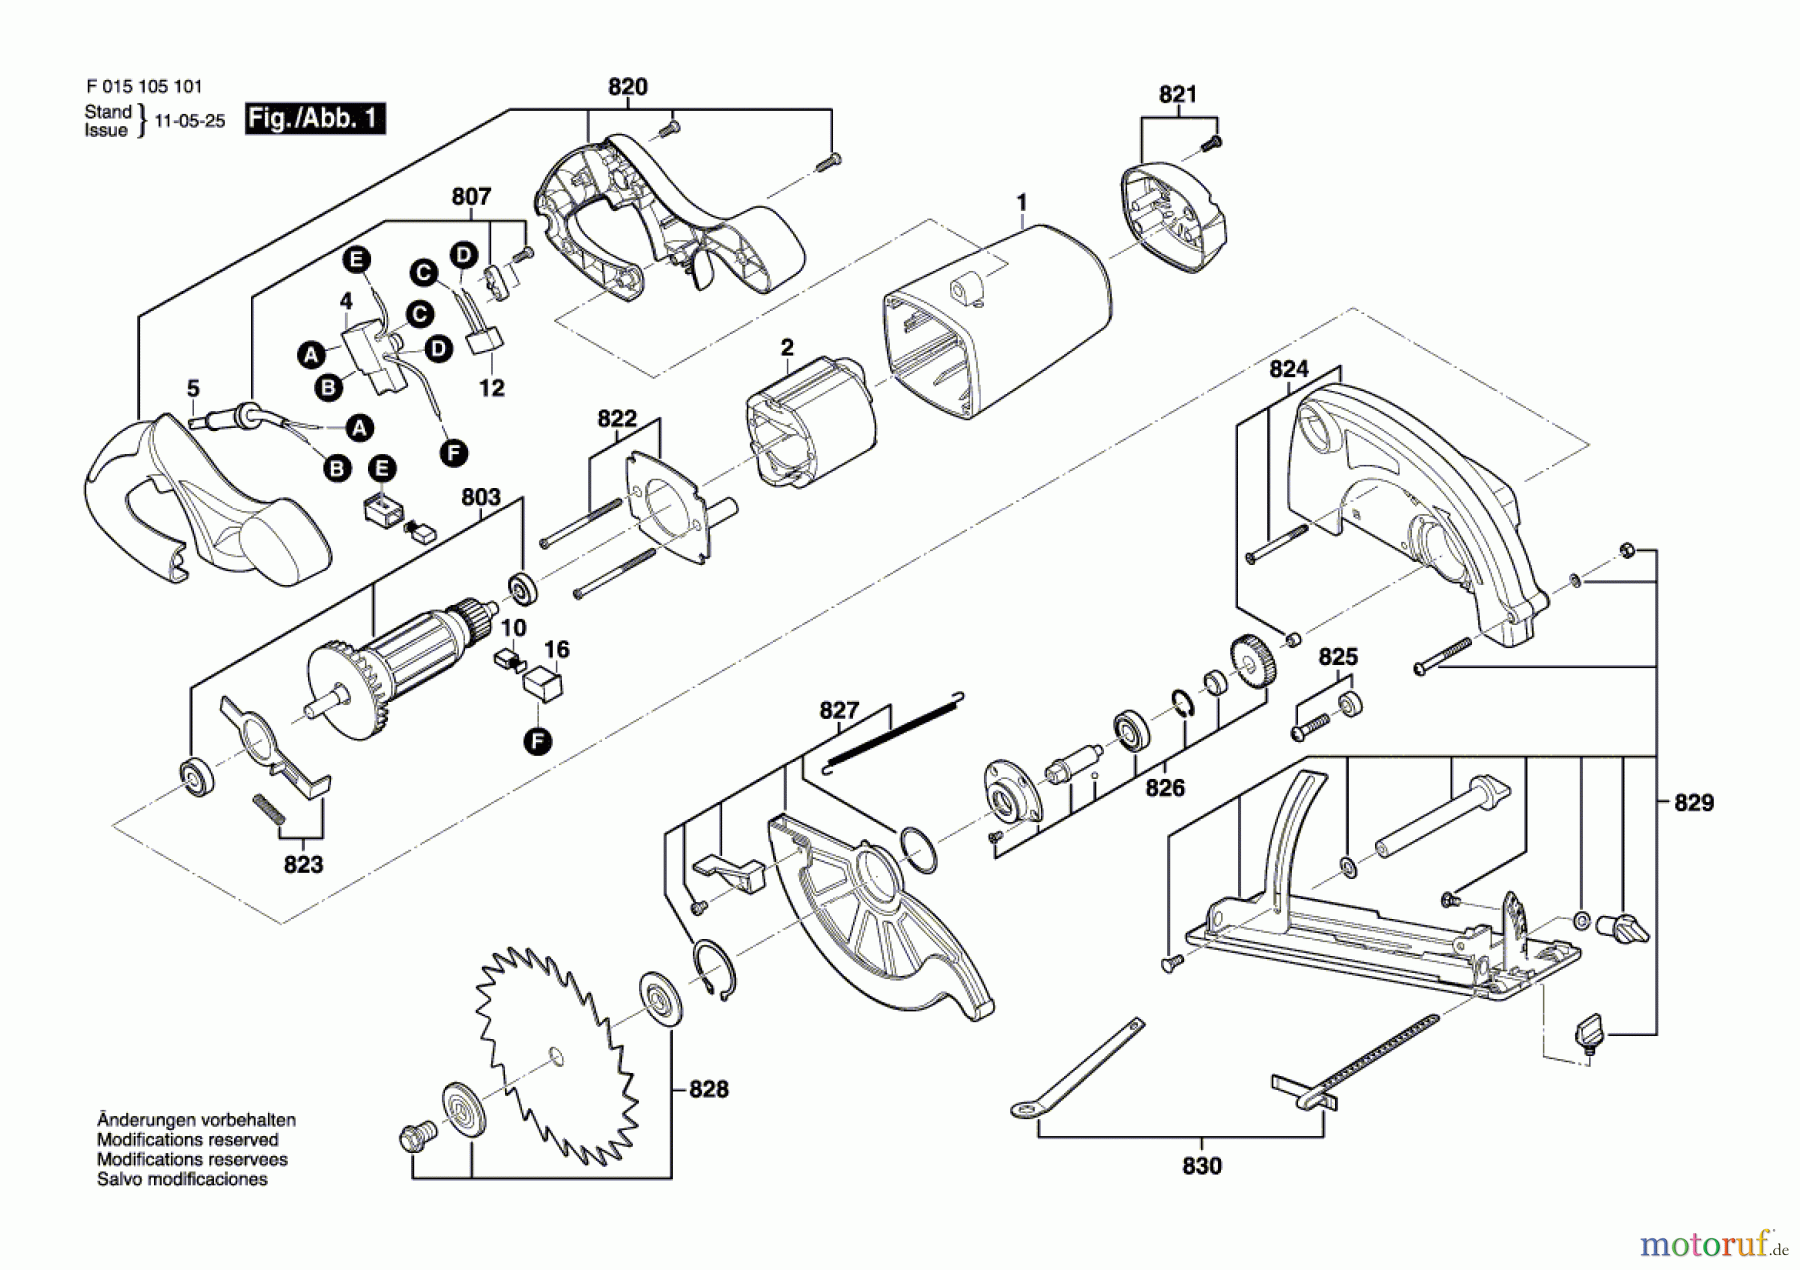  Bosch Werkzeug Handkreissäge 5165 Seite 1